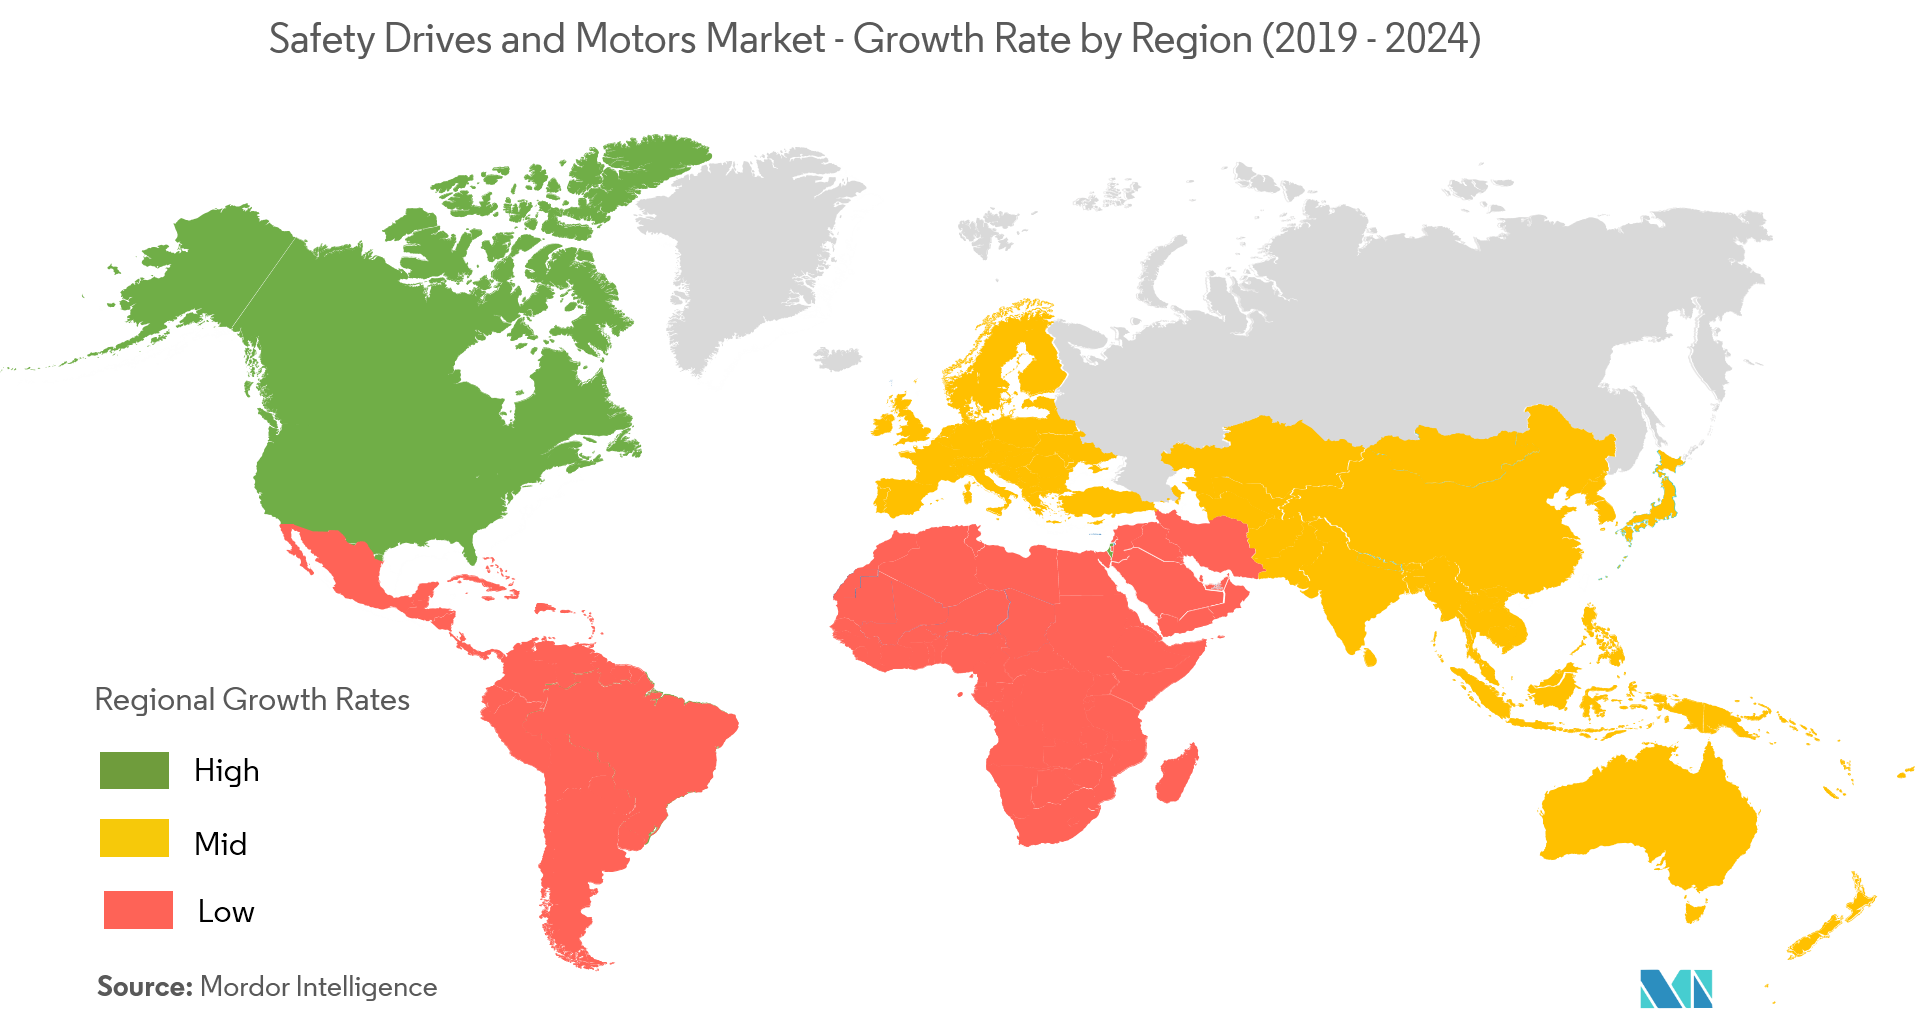 Mercado de motores y unidades de seguridad tasa de crecimiento por región (2019-2024)